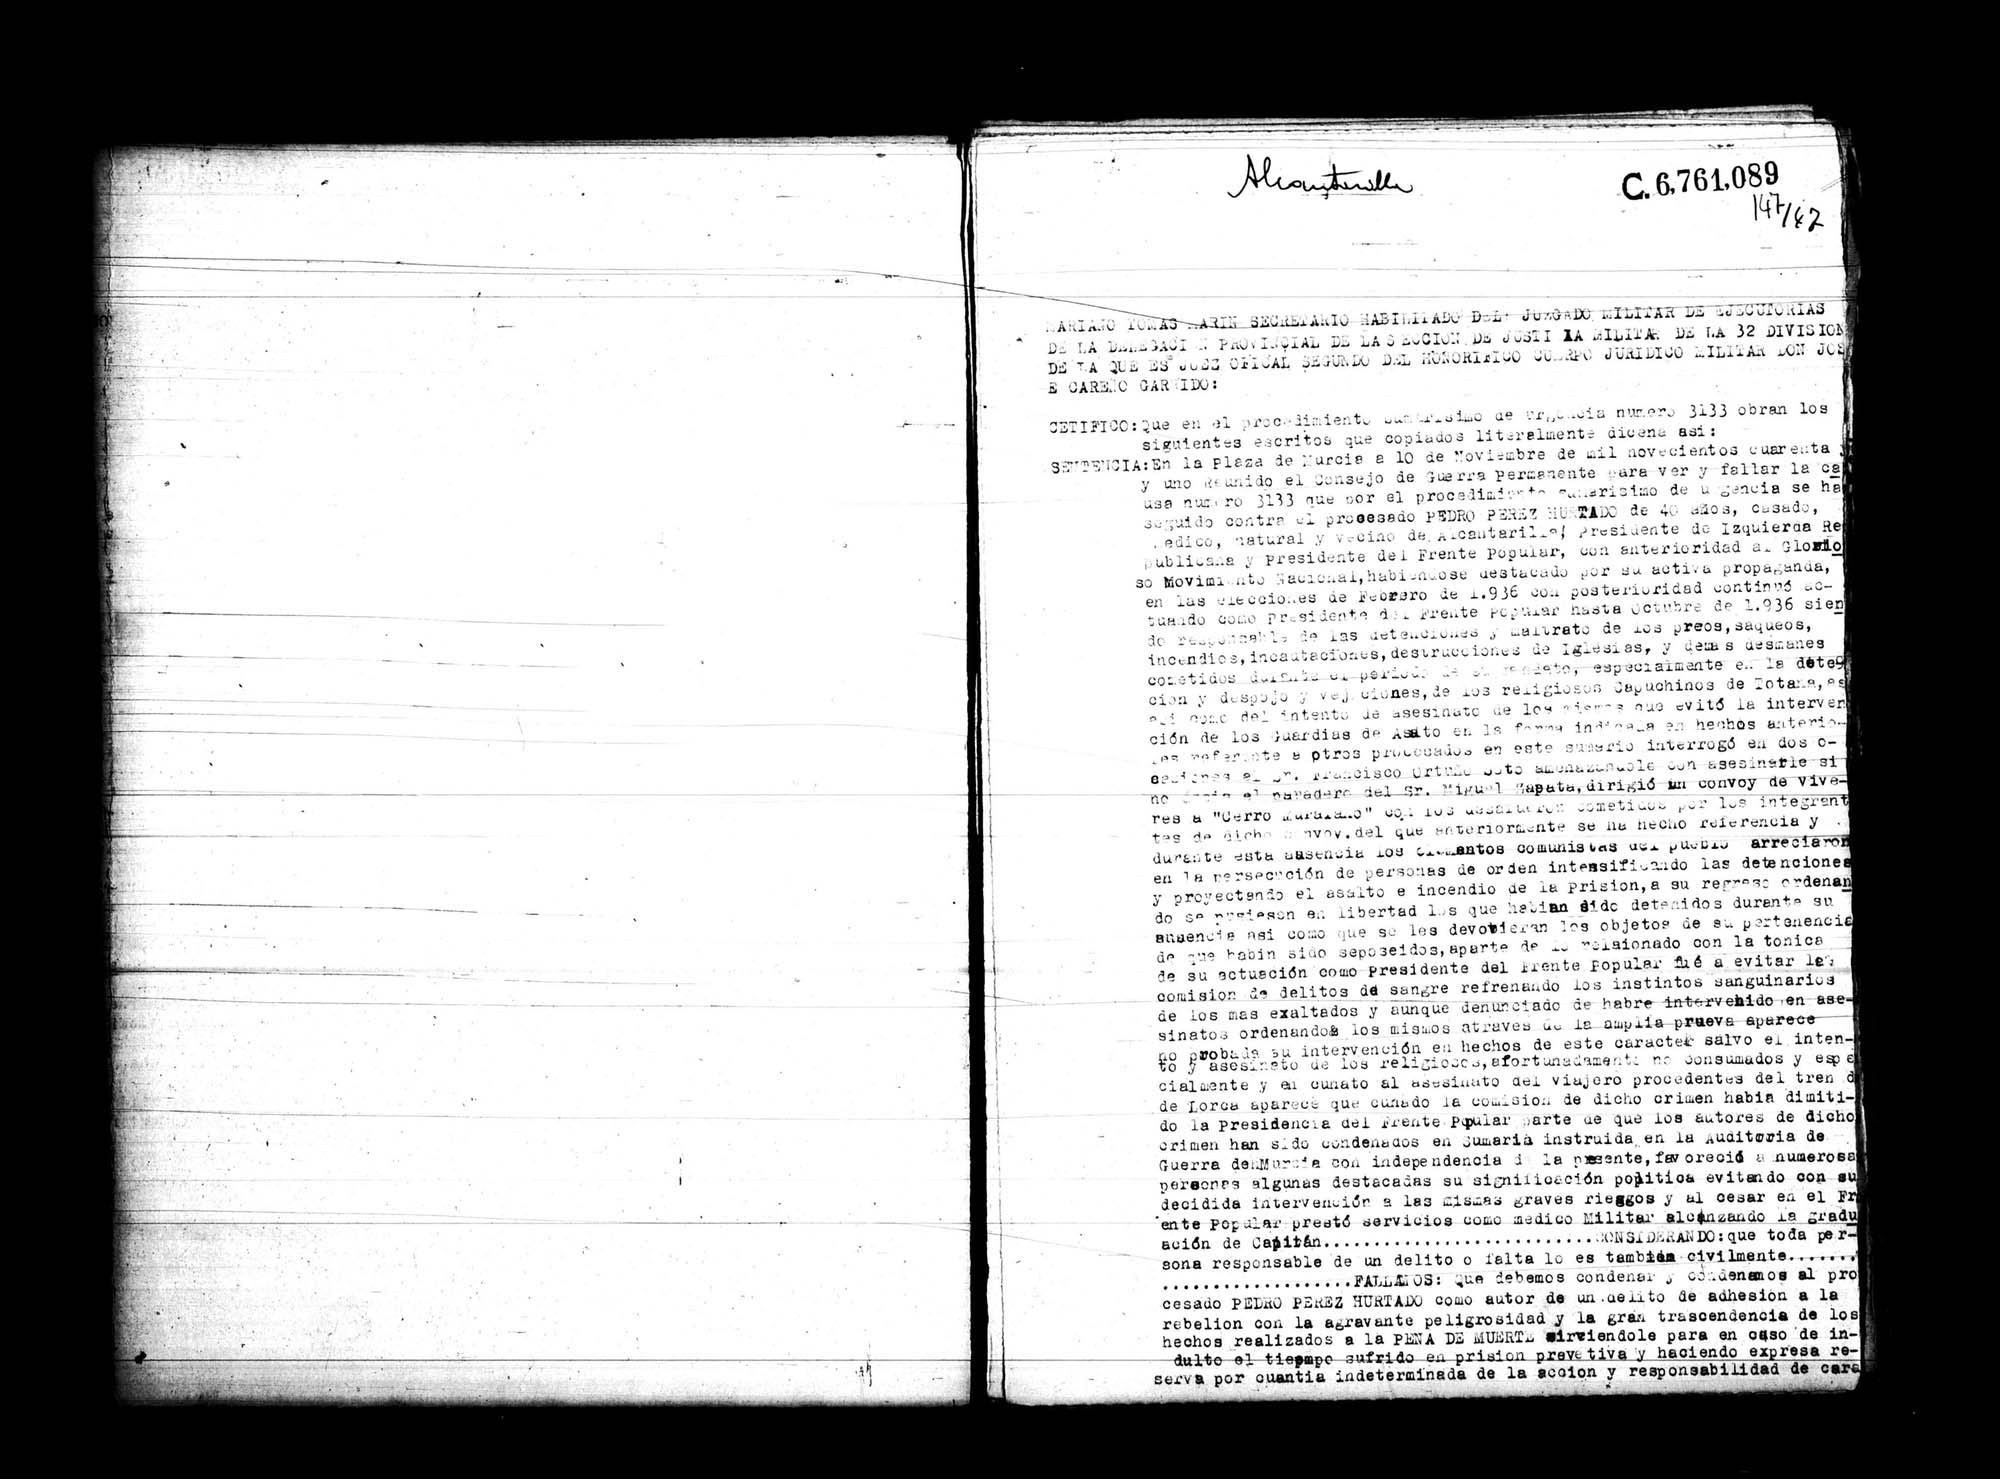 Certificado de la sentencia pronunciada contra Pedro Pérez Hurtado, causa 3133, el 10 de noviembre de 1941 en Murcia.